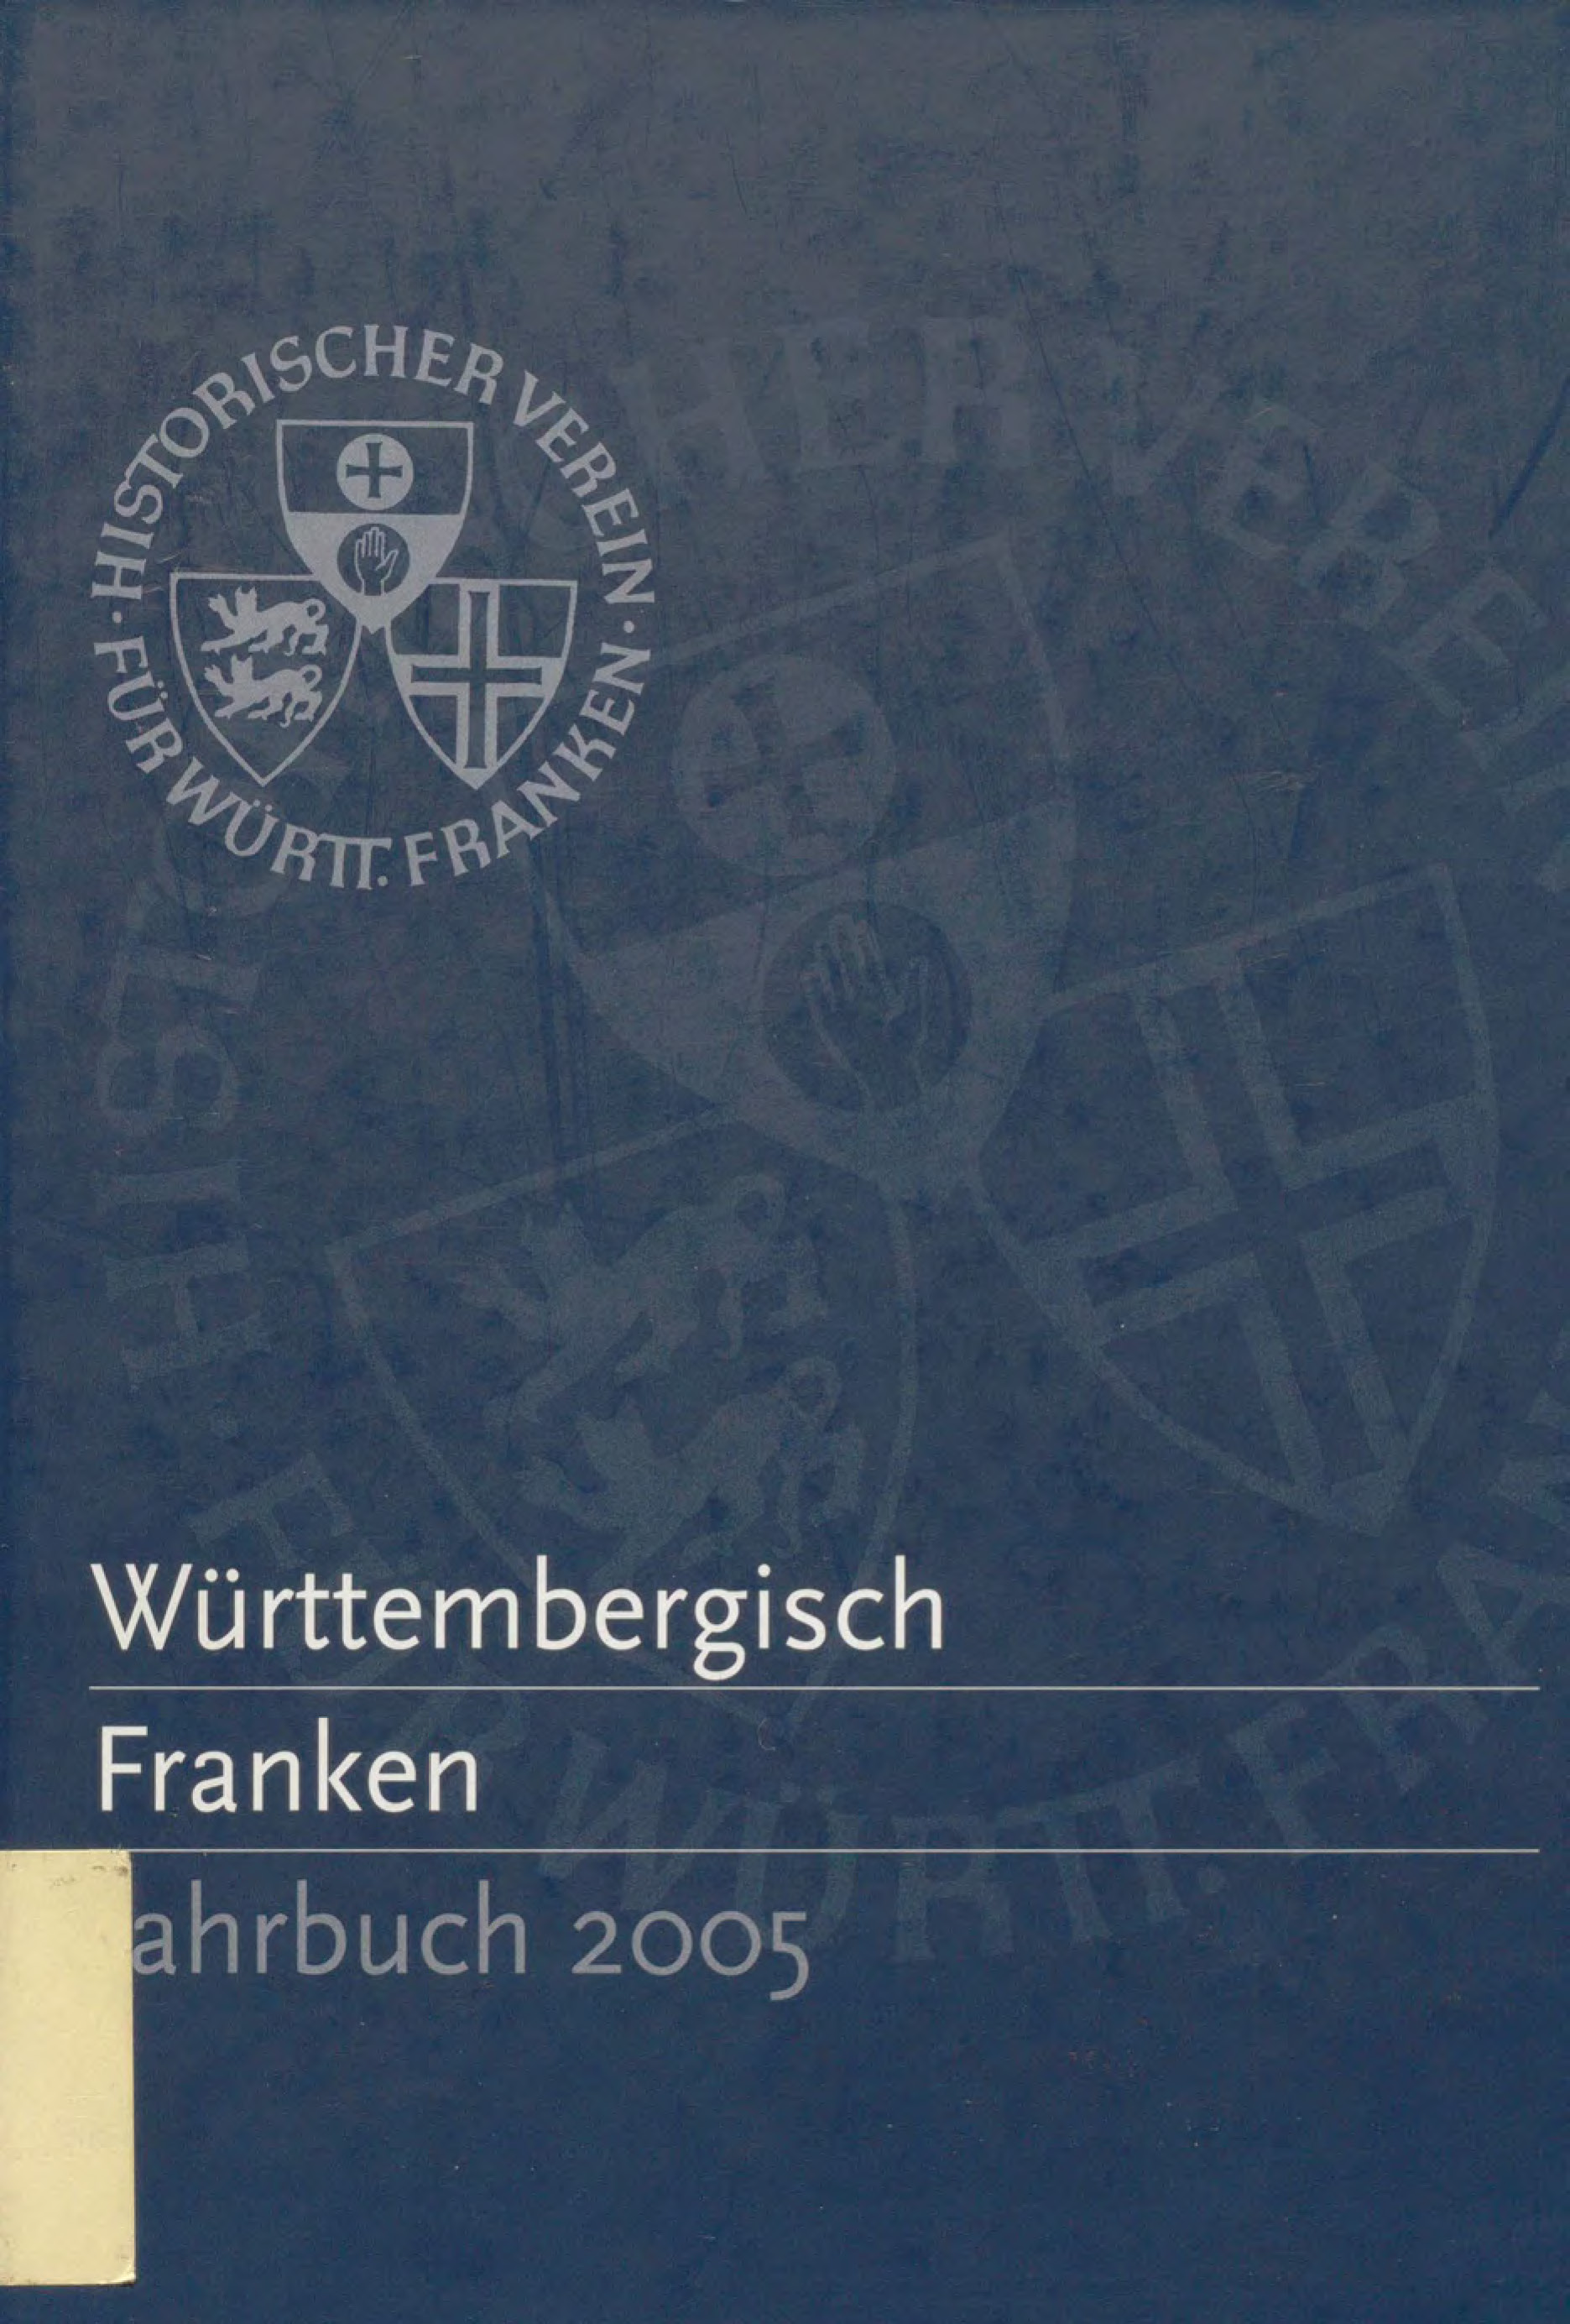                     Ansehen Bd. 89 (2005): Württembergisch Franken
                